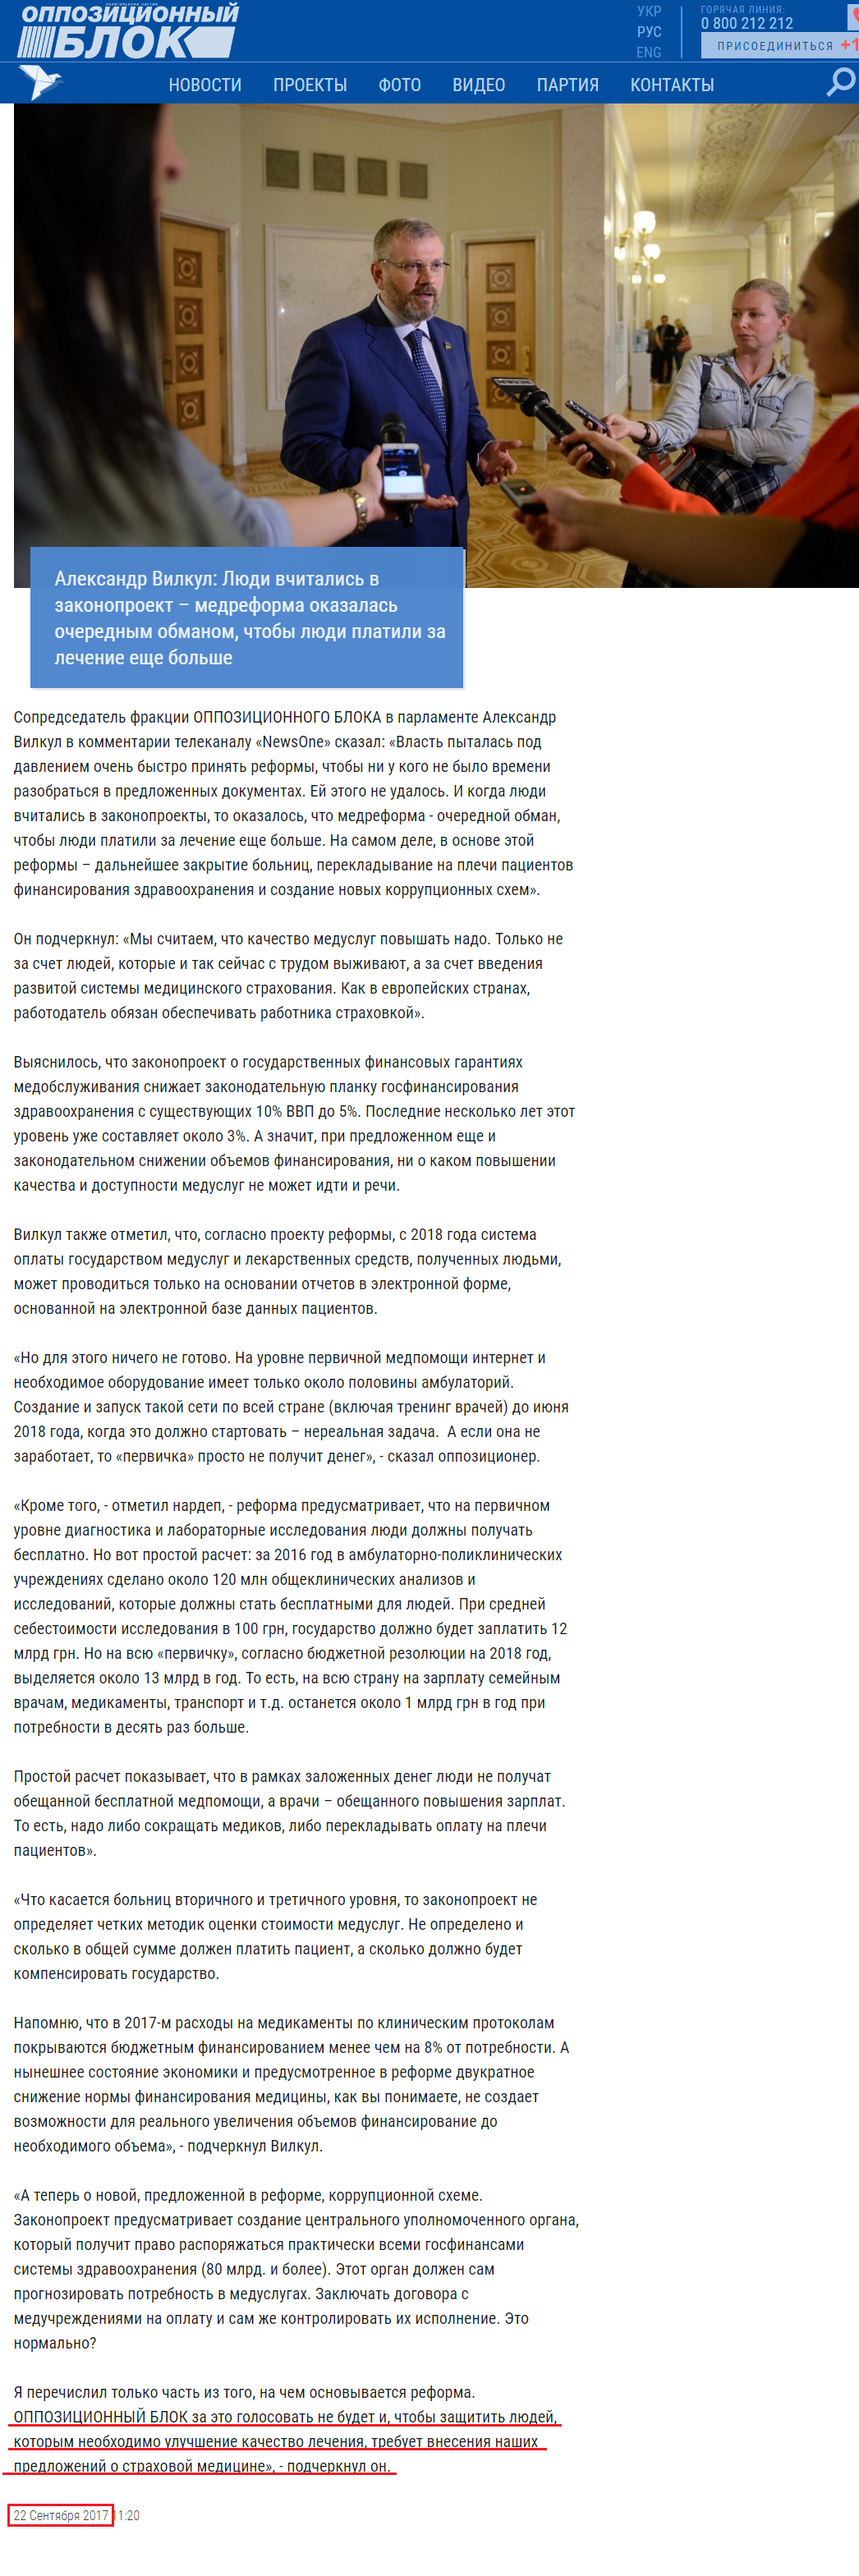 http://opposition.org.ua/news/oleksandr-vilkul-lyudi-vchitalis-v-zakonoproekt-medreforma-viyavilasya-chergovim-obmanom-shhob-lyudi-platili-za-likuvannya-shhe-bilshe.html